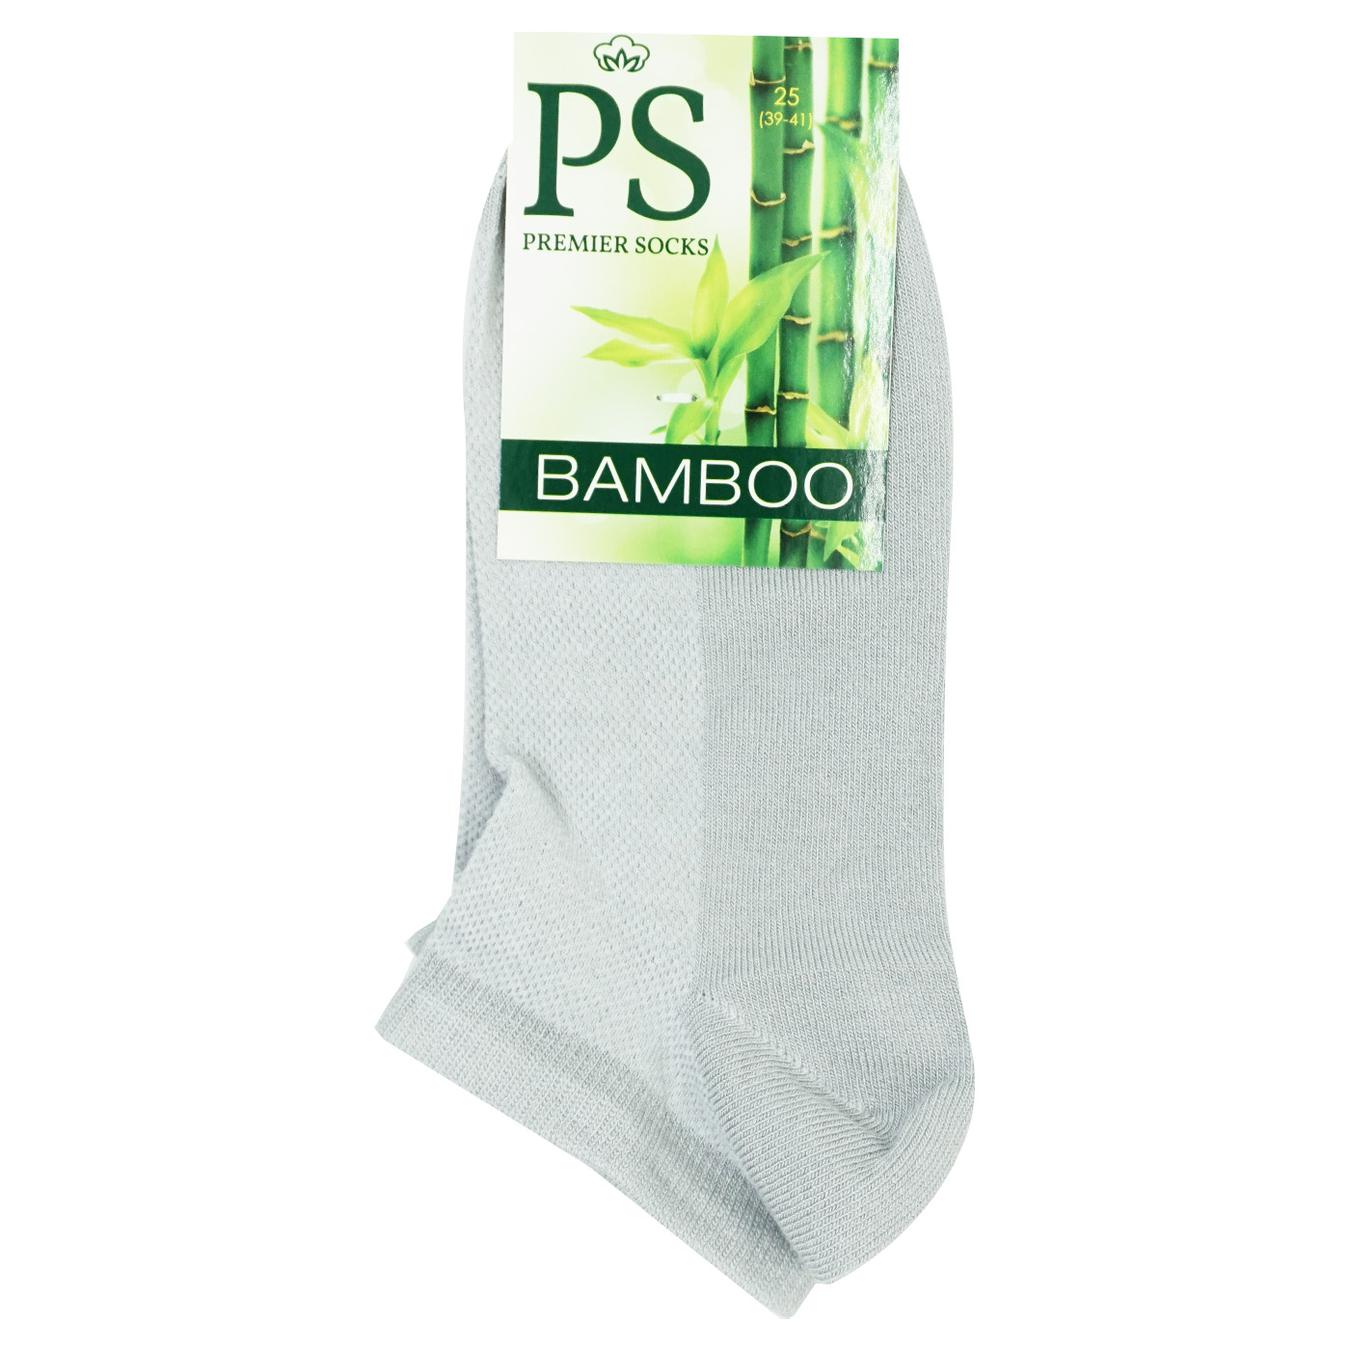 Men's socks Premier Socks Bamboo gray short summer mesh 25 years.